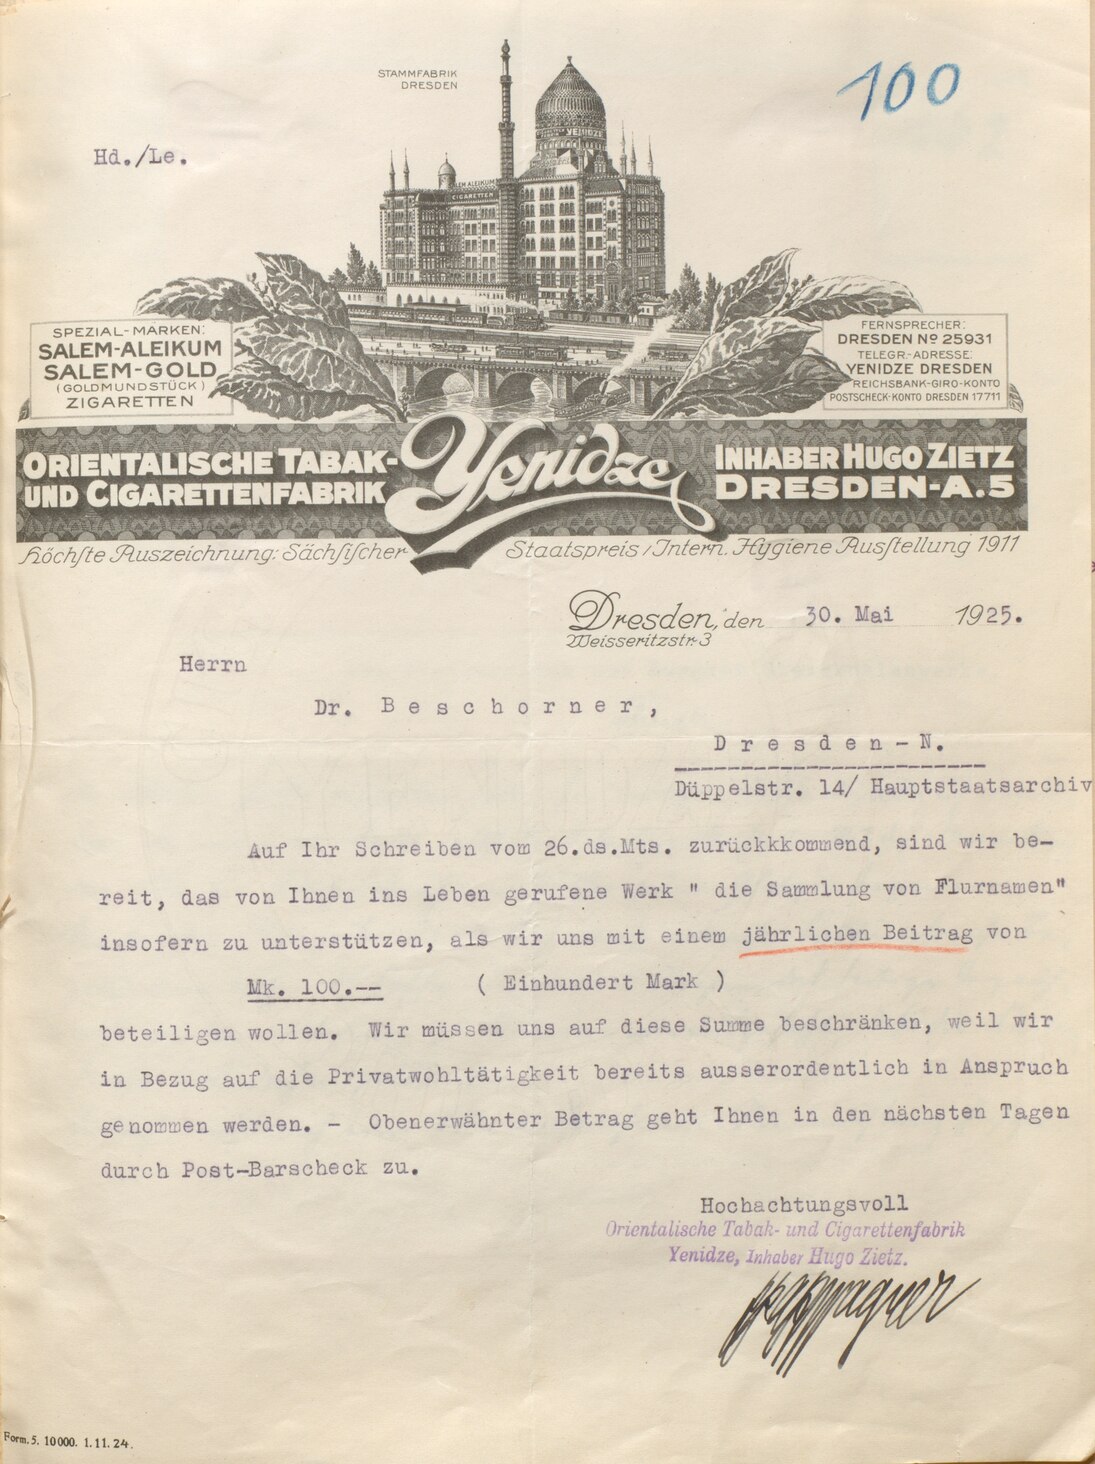 Spende der Orientalischen Tabak- und Cigarettenfabrik Yenidze, 1925